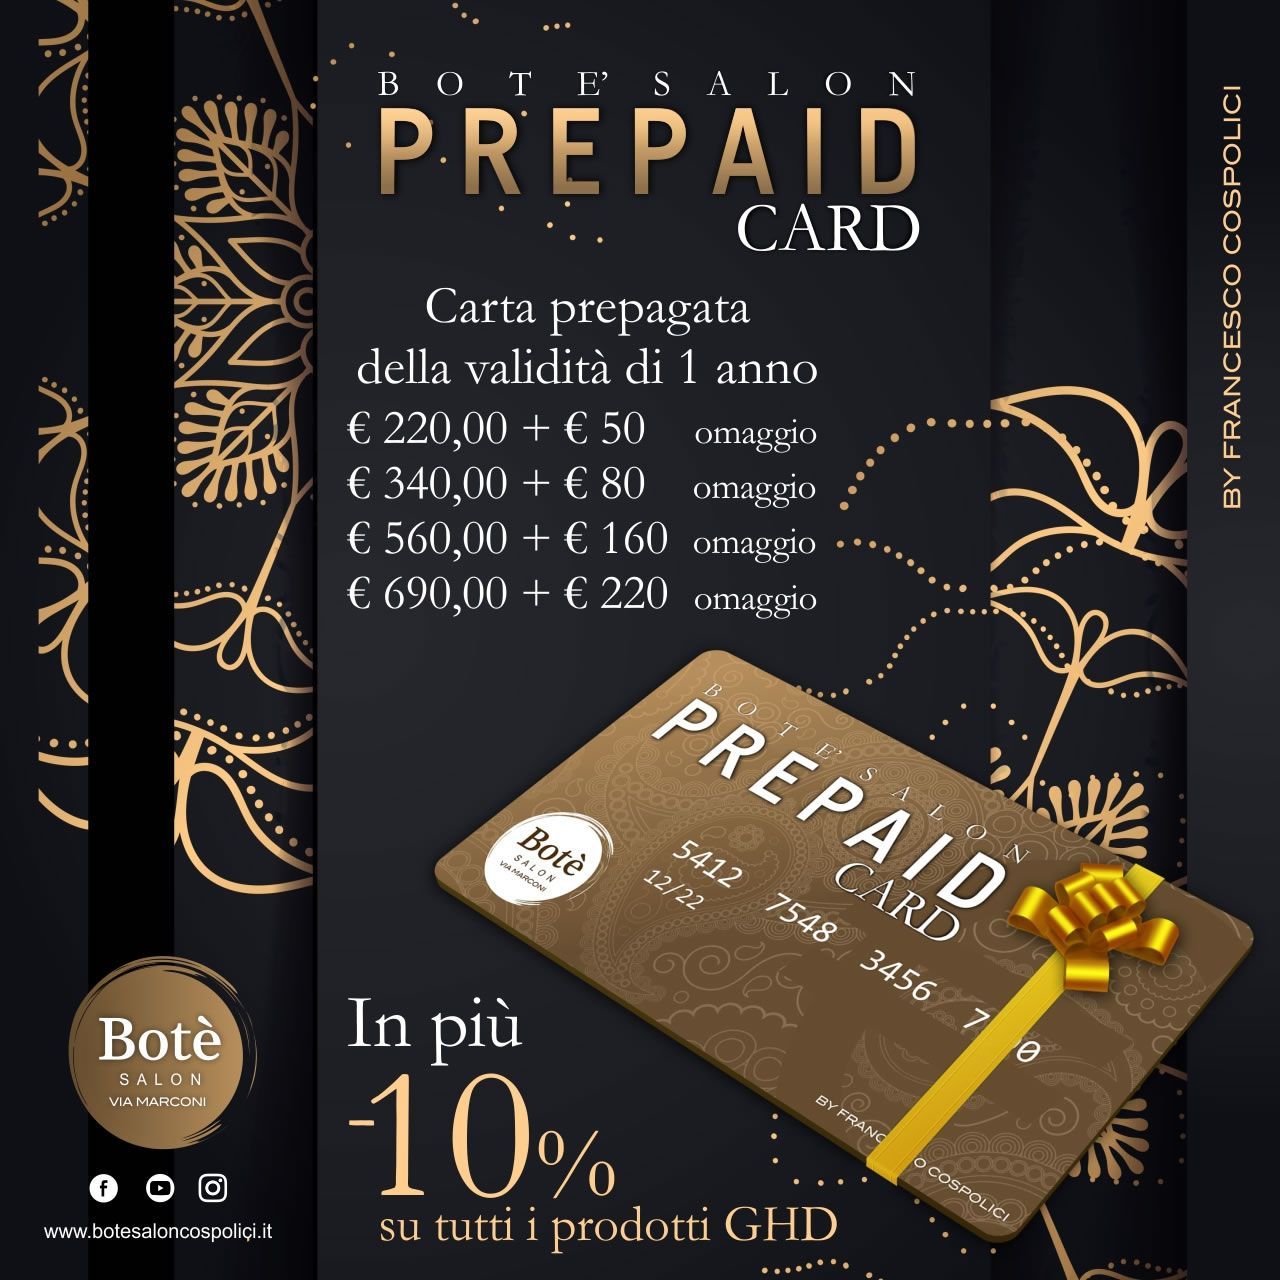 Visualizza l'iniziativa Bote Salon Prepaid Card